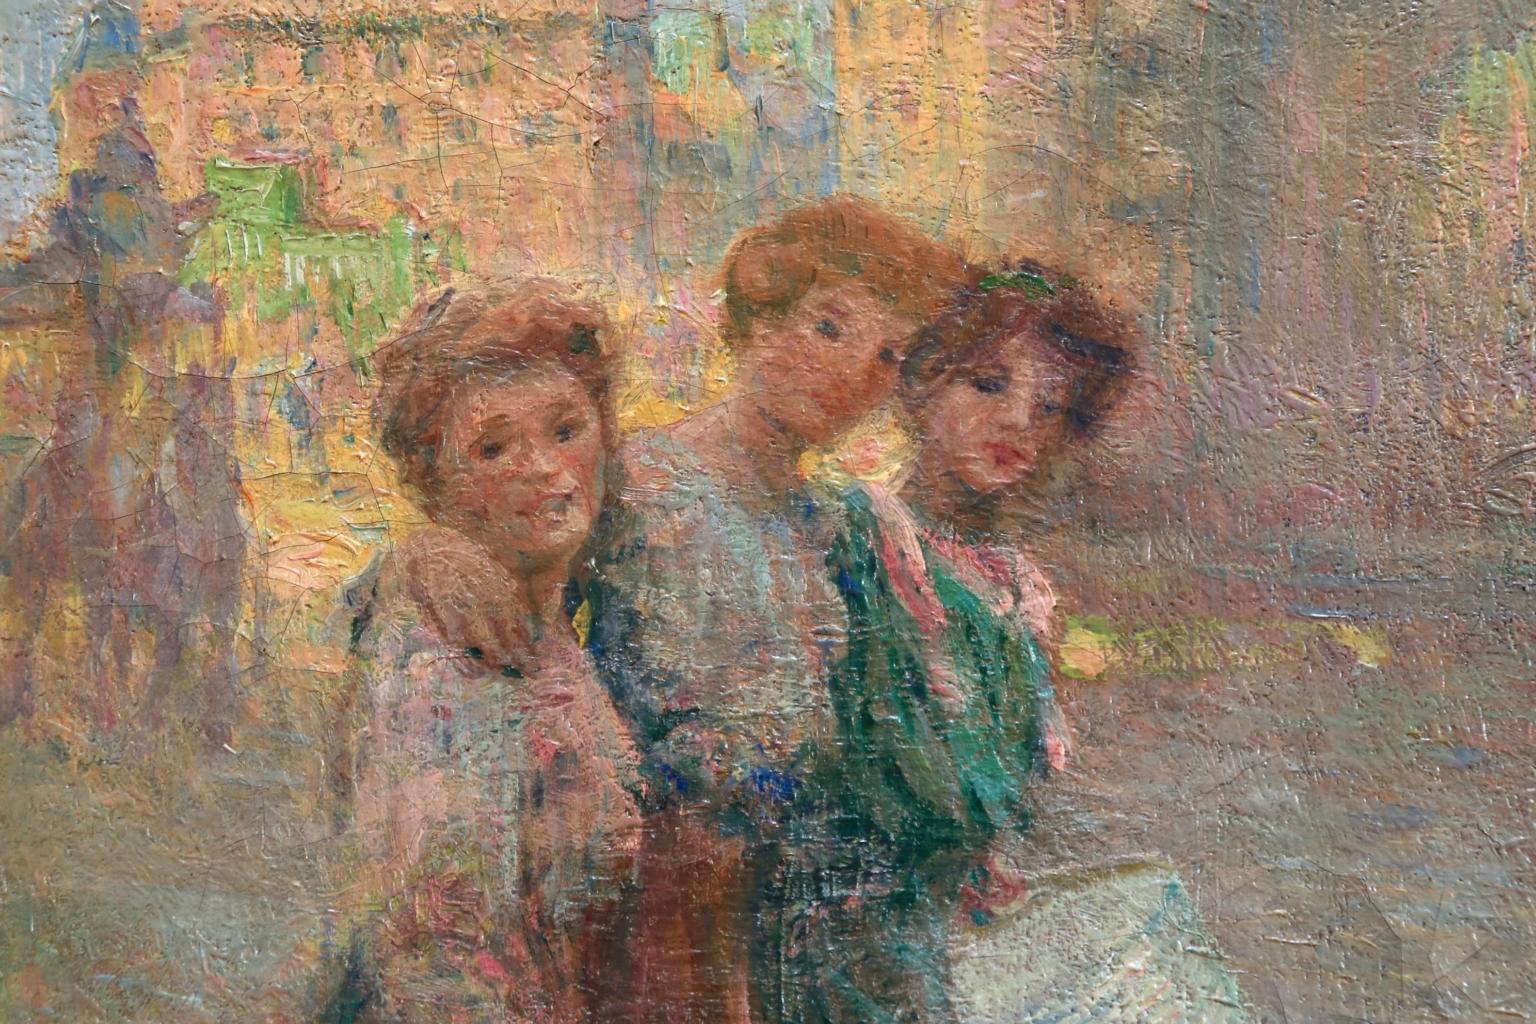 Les Trois Soeurs - Impressionist Oil, Women in City Landscape by J B Pegot-Ogier 1